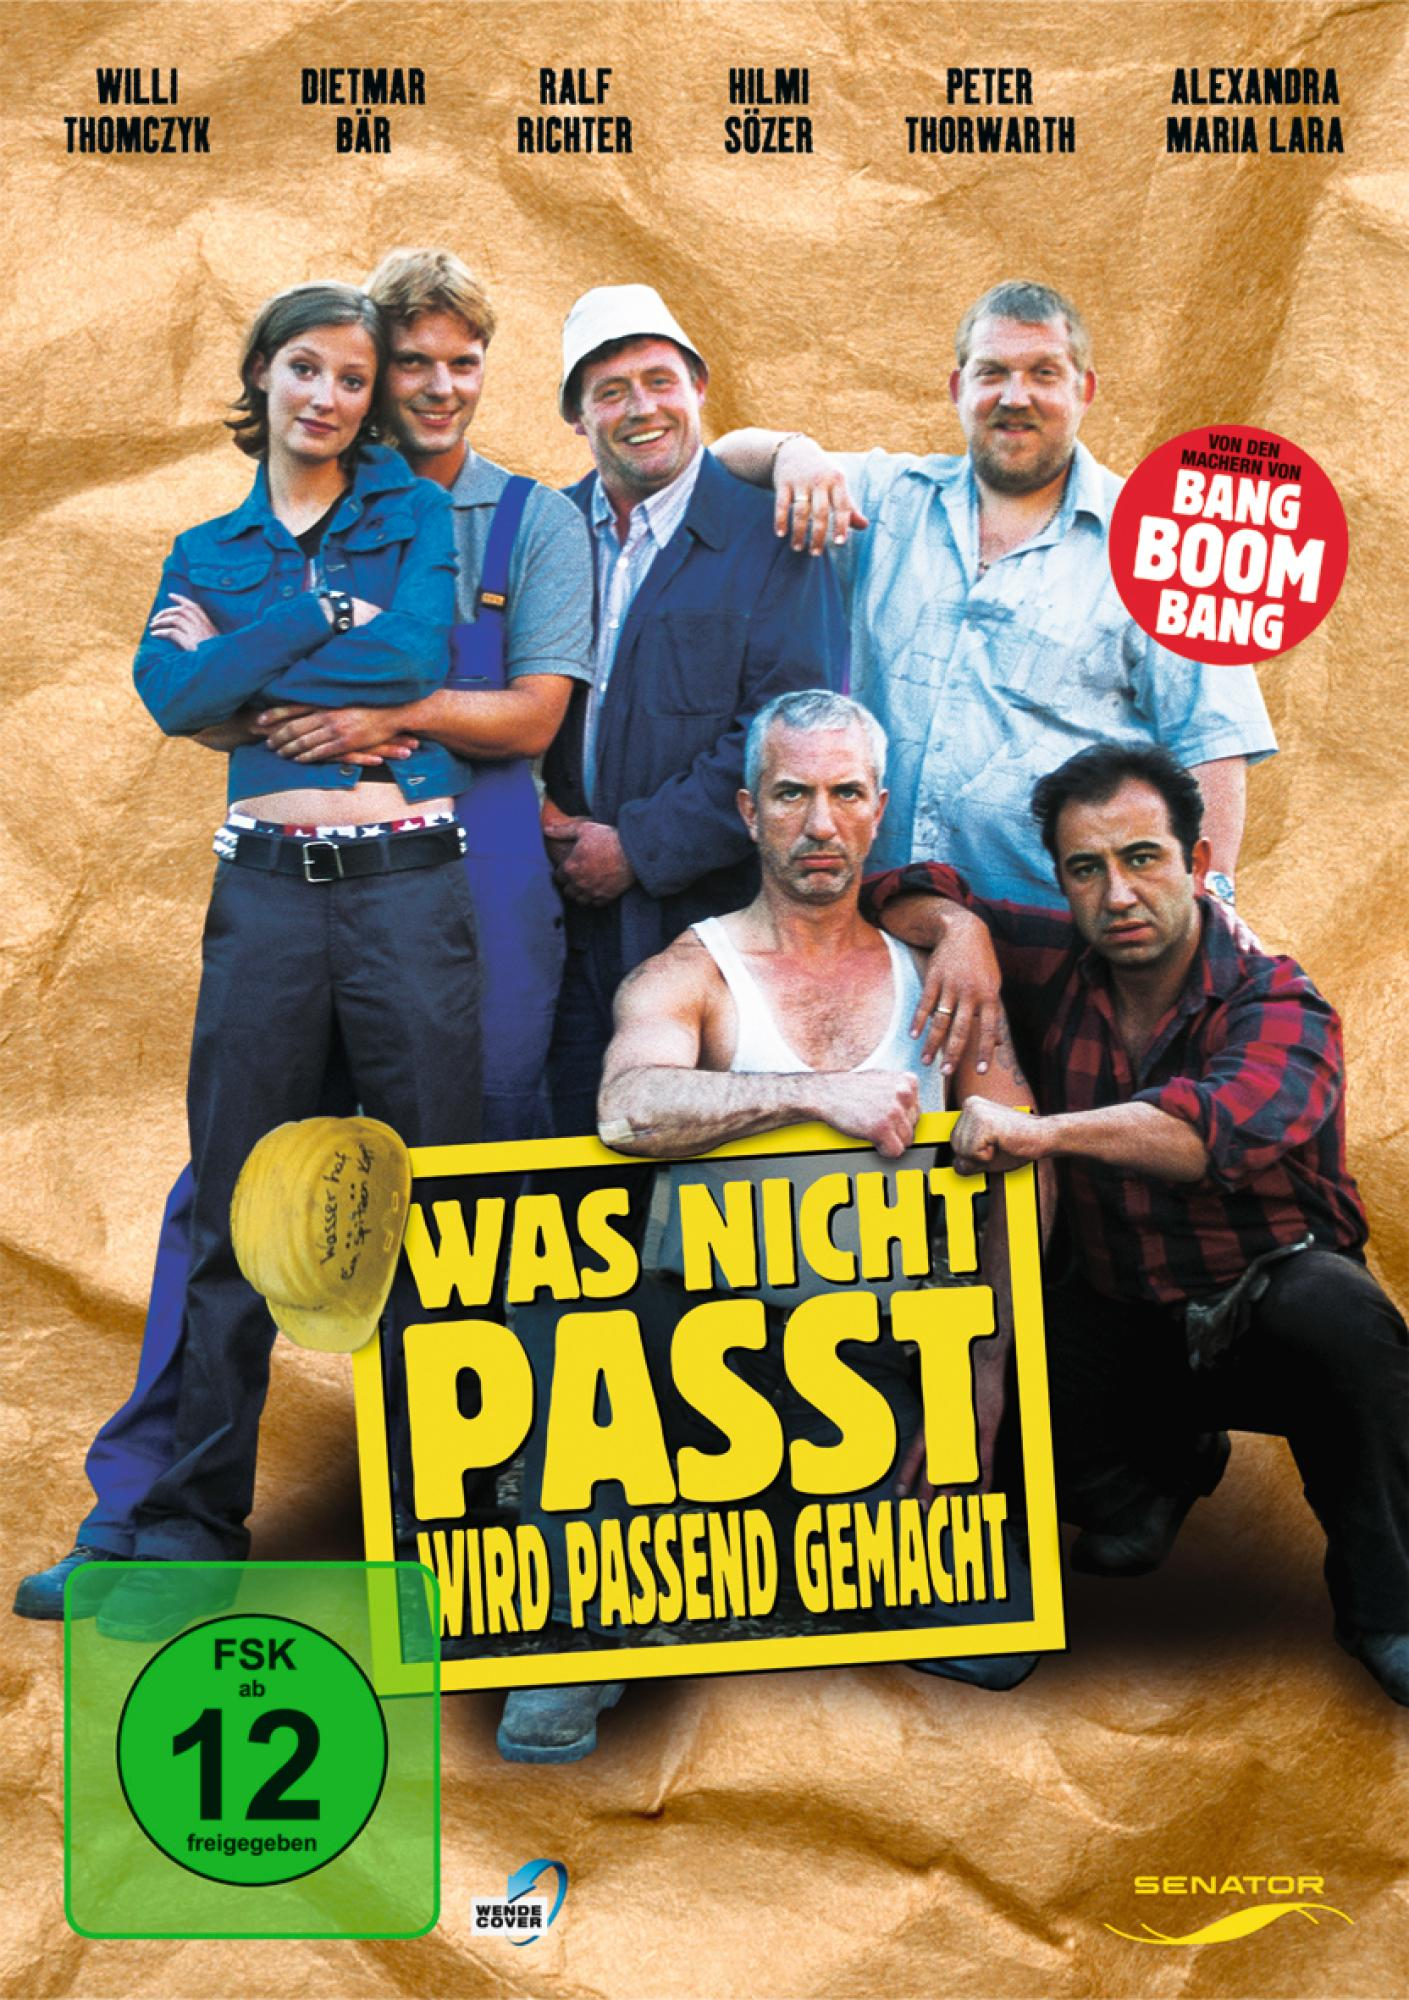 PASSEND WIRD DVD PASST, GEMACHT NICHT WAS